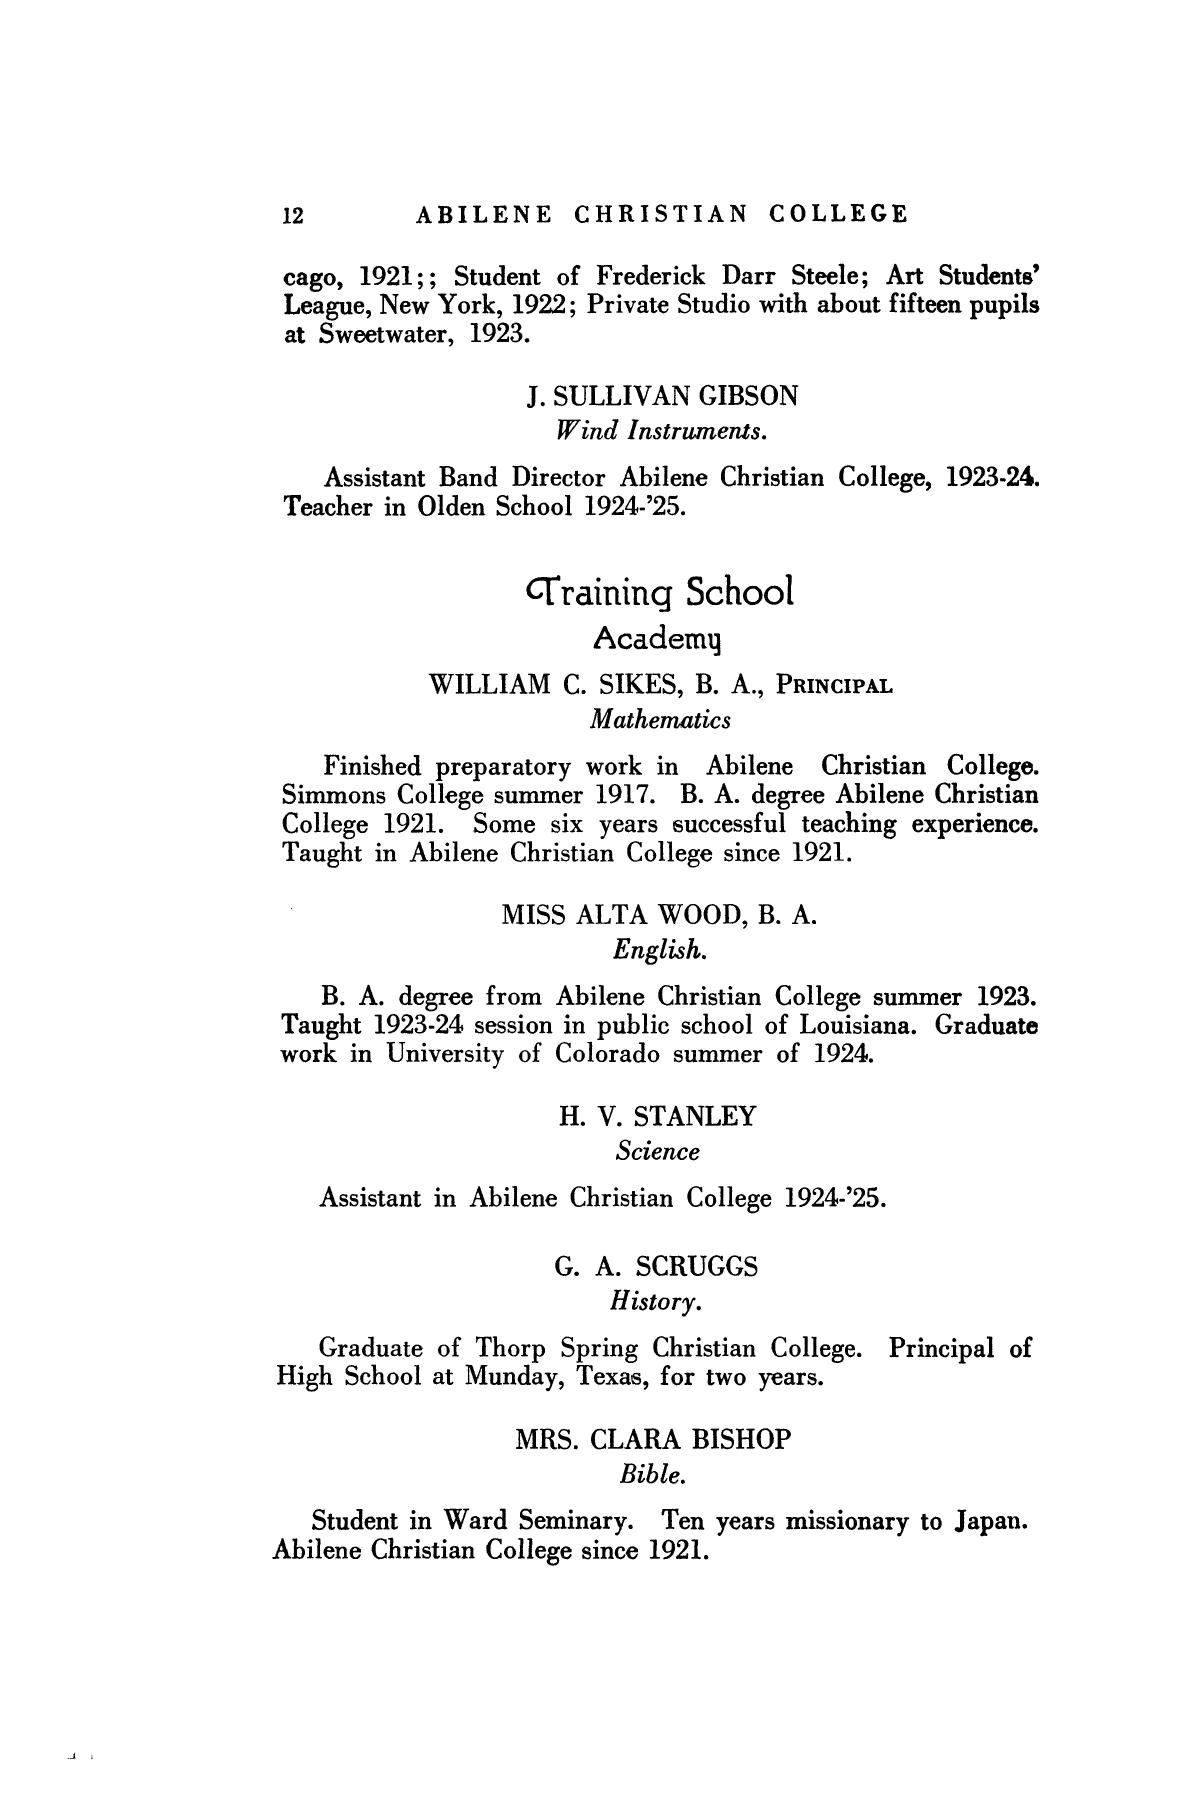 Catalog of Abilene Christian College, 1925-1926
                                                
                                                    12
                                                